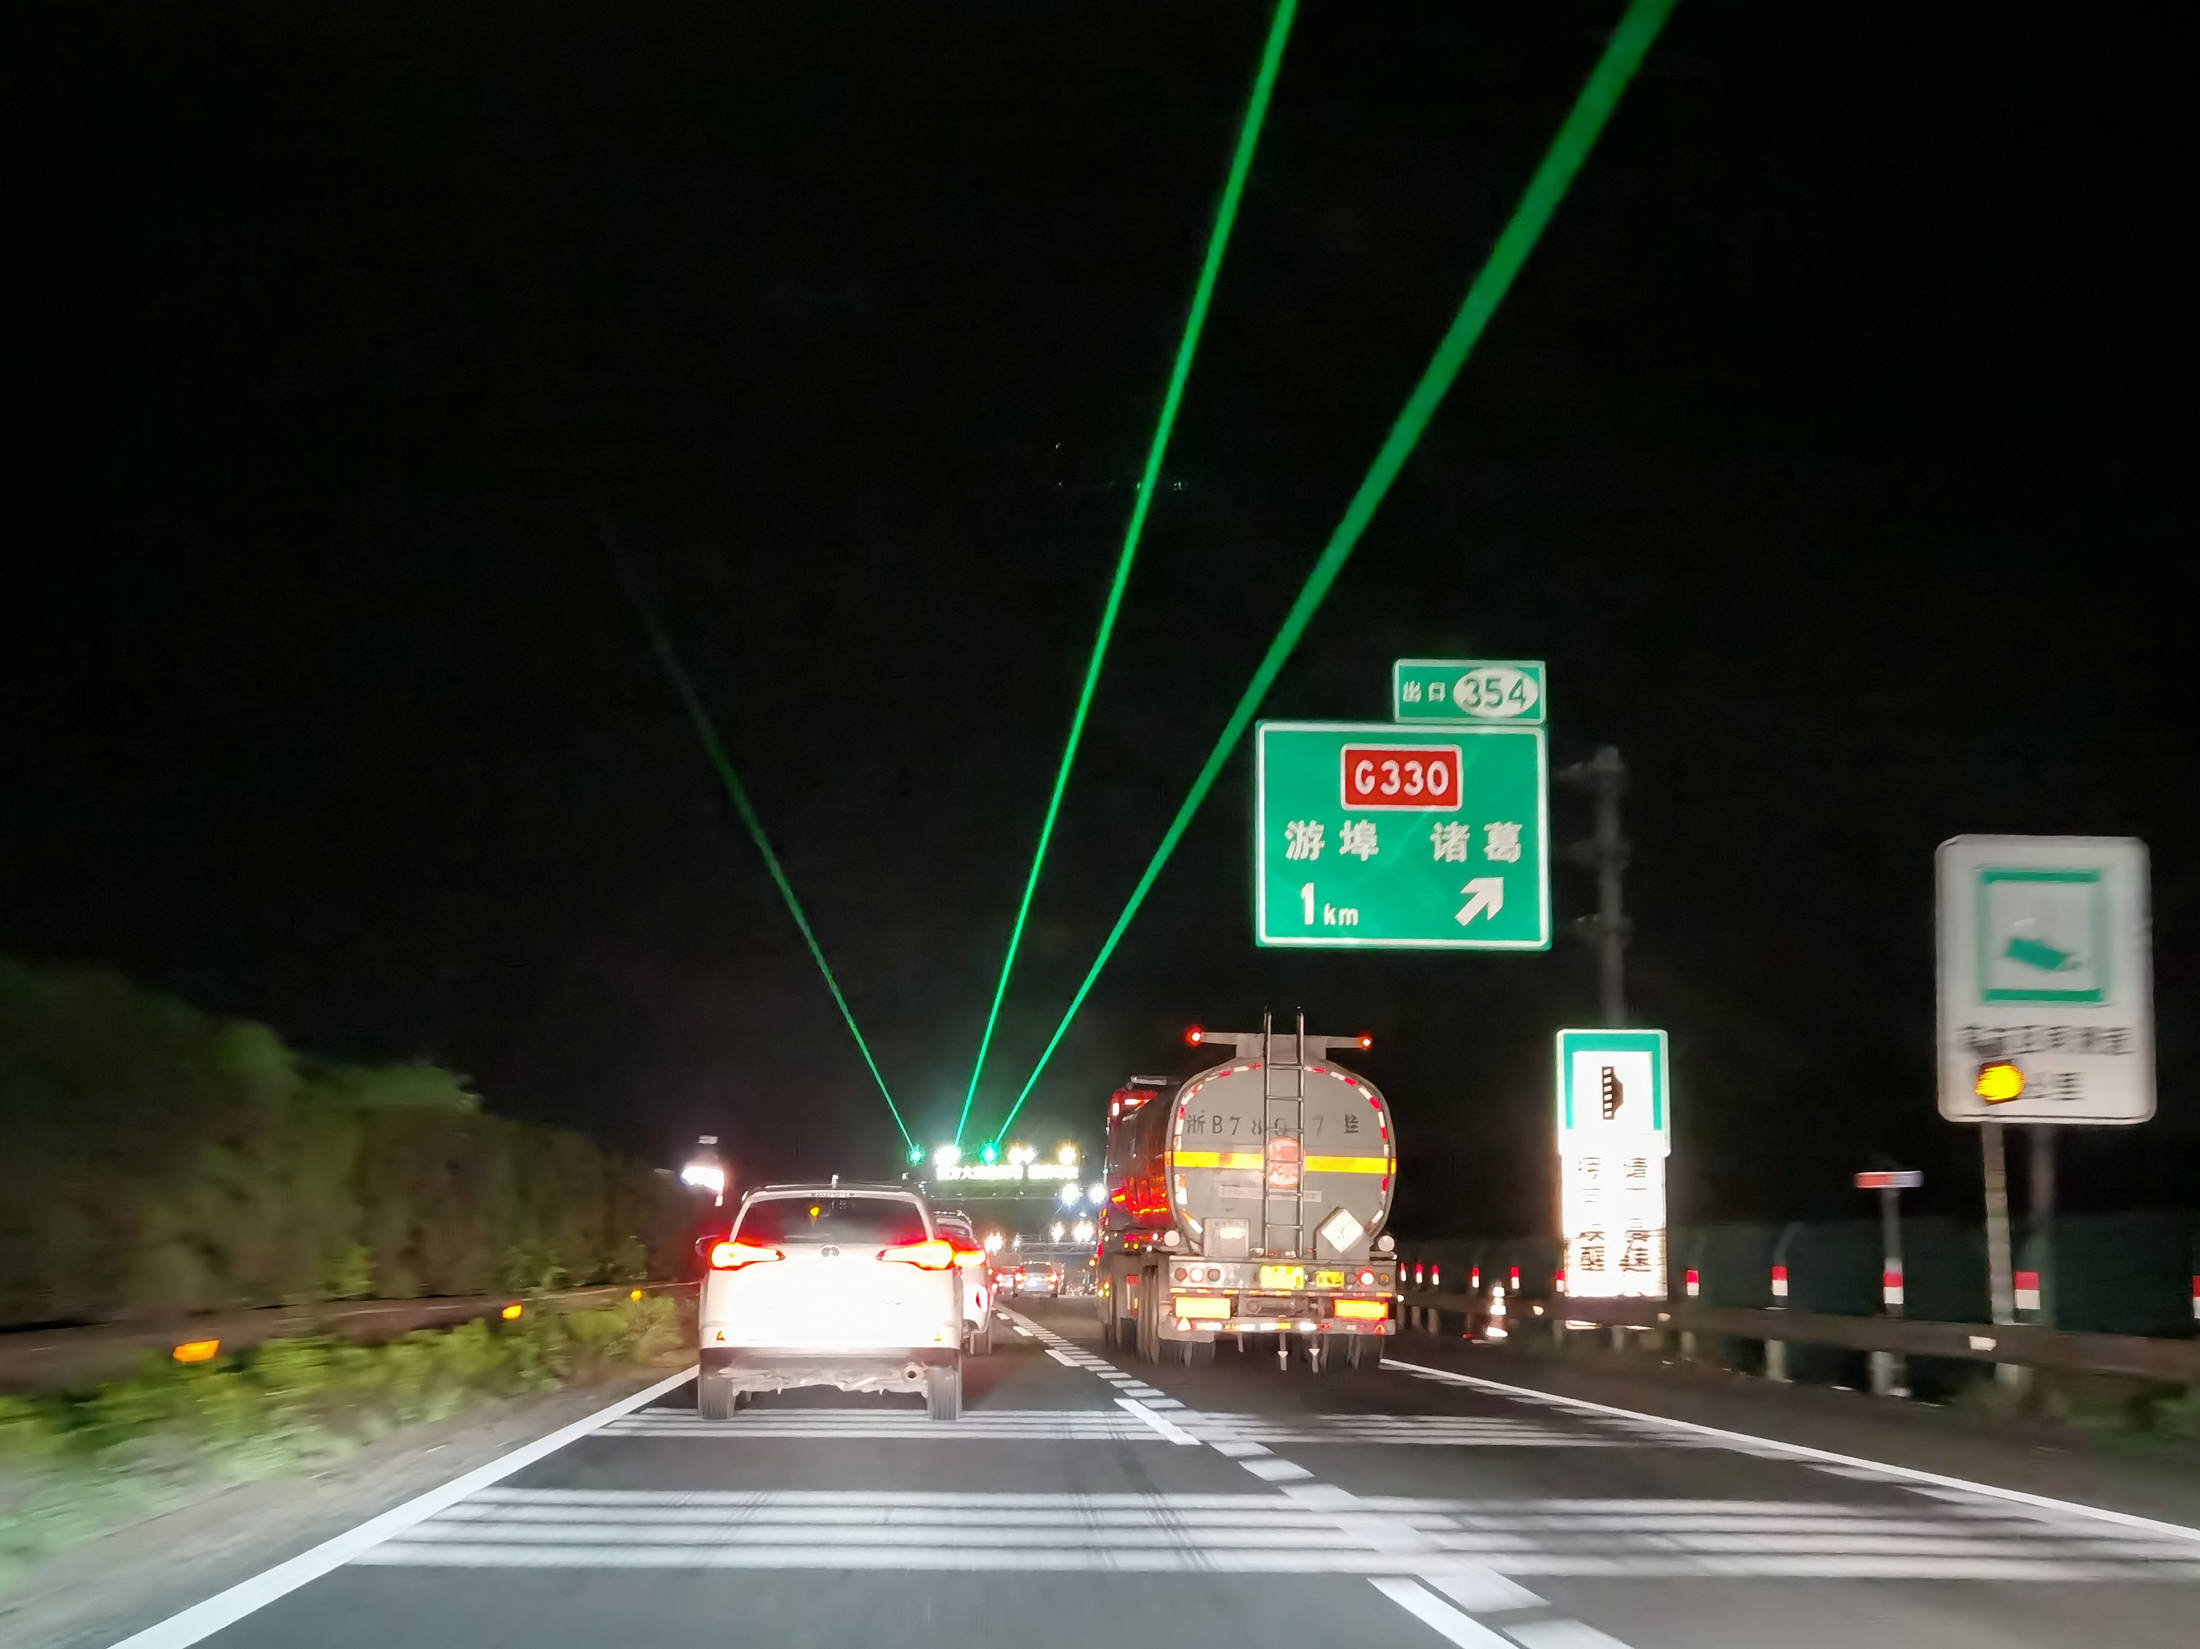 高速公路照片夜景图片